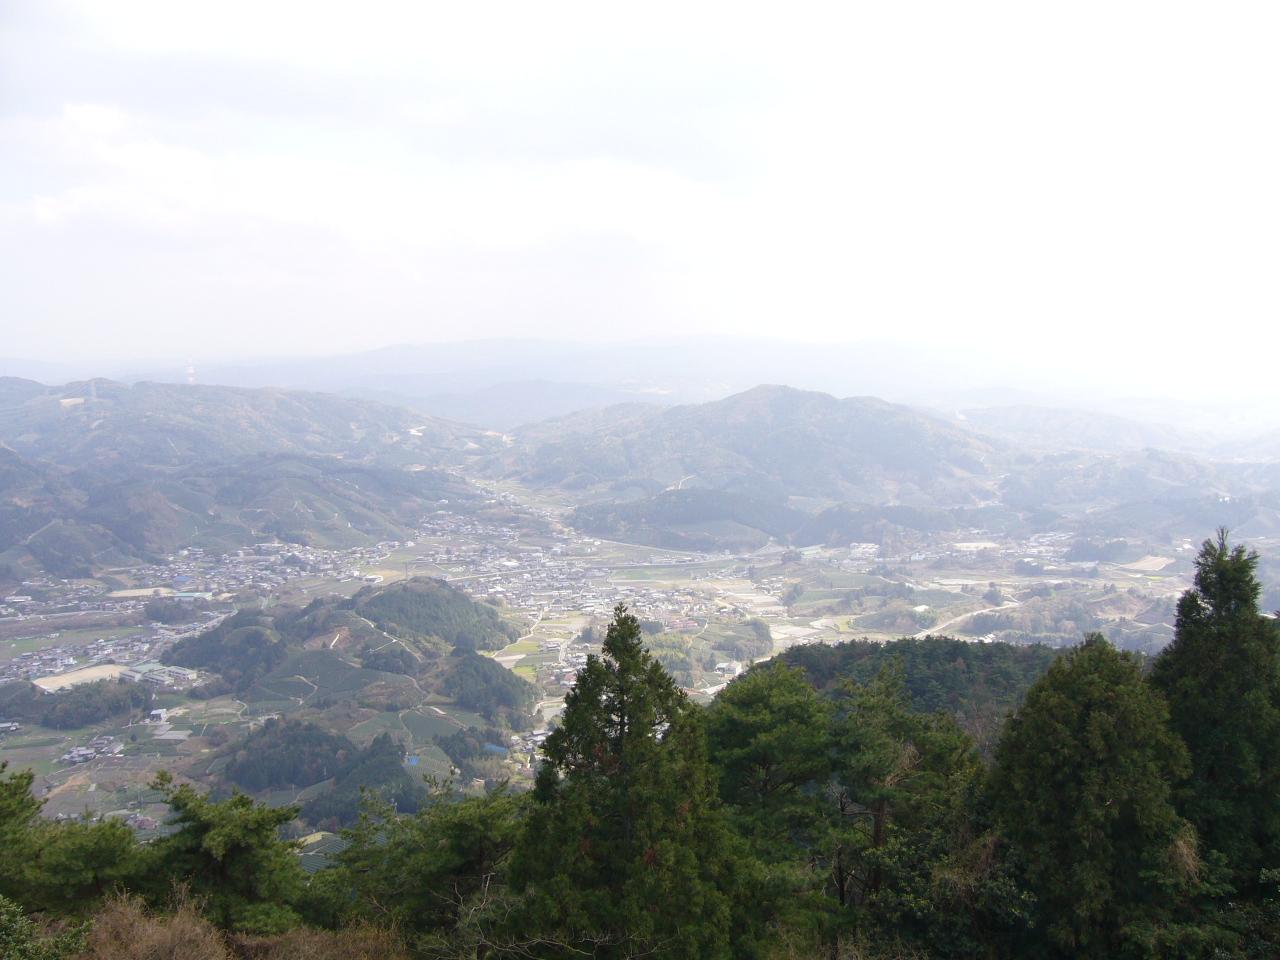 和束町全景を写した写真